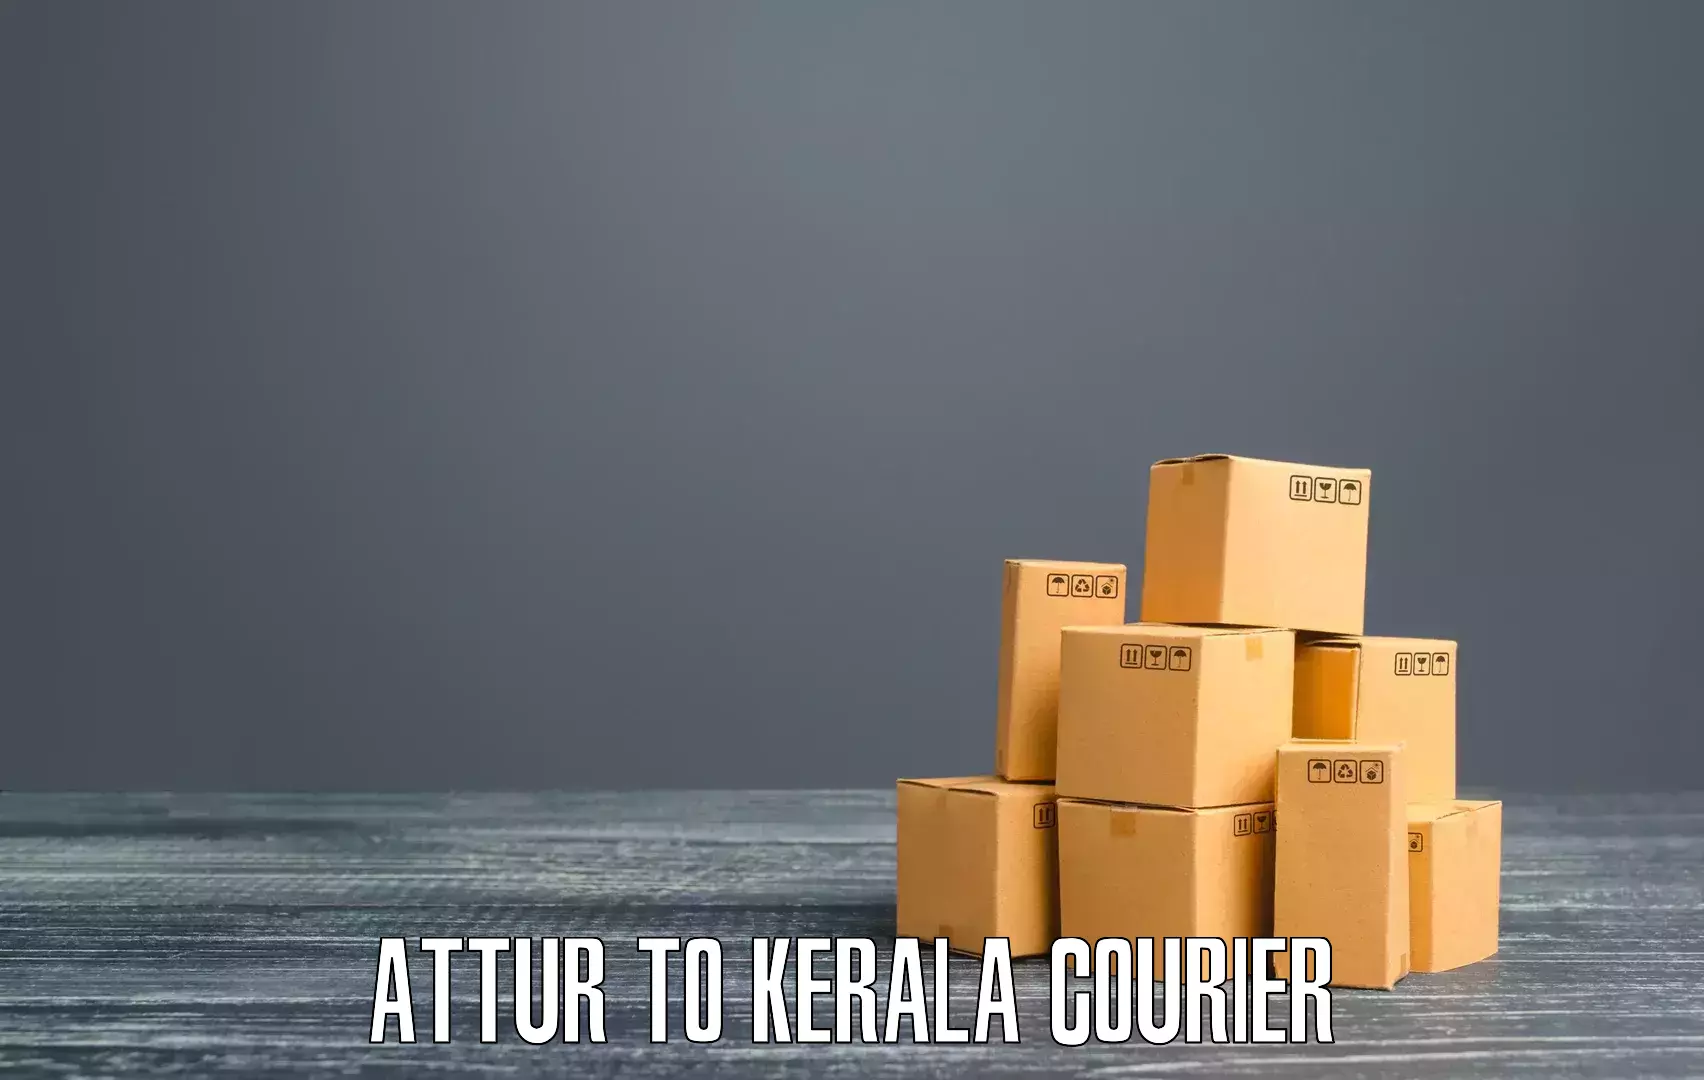 Flexible parcel services Attur to Kottayam